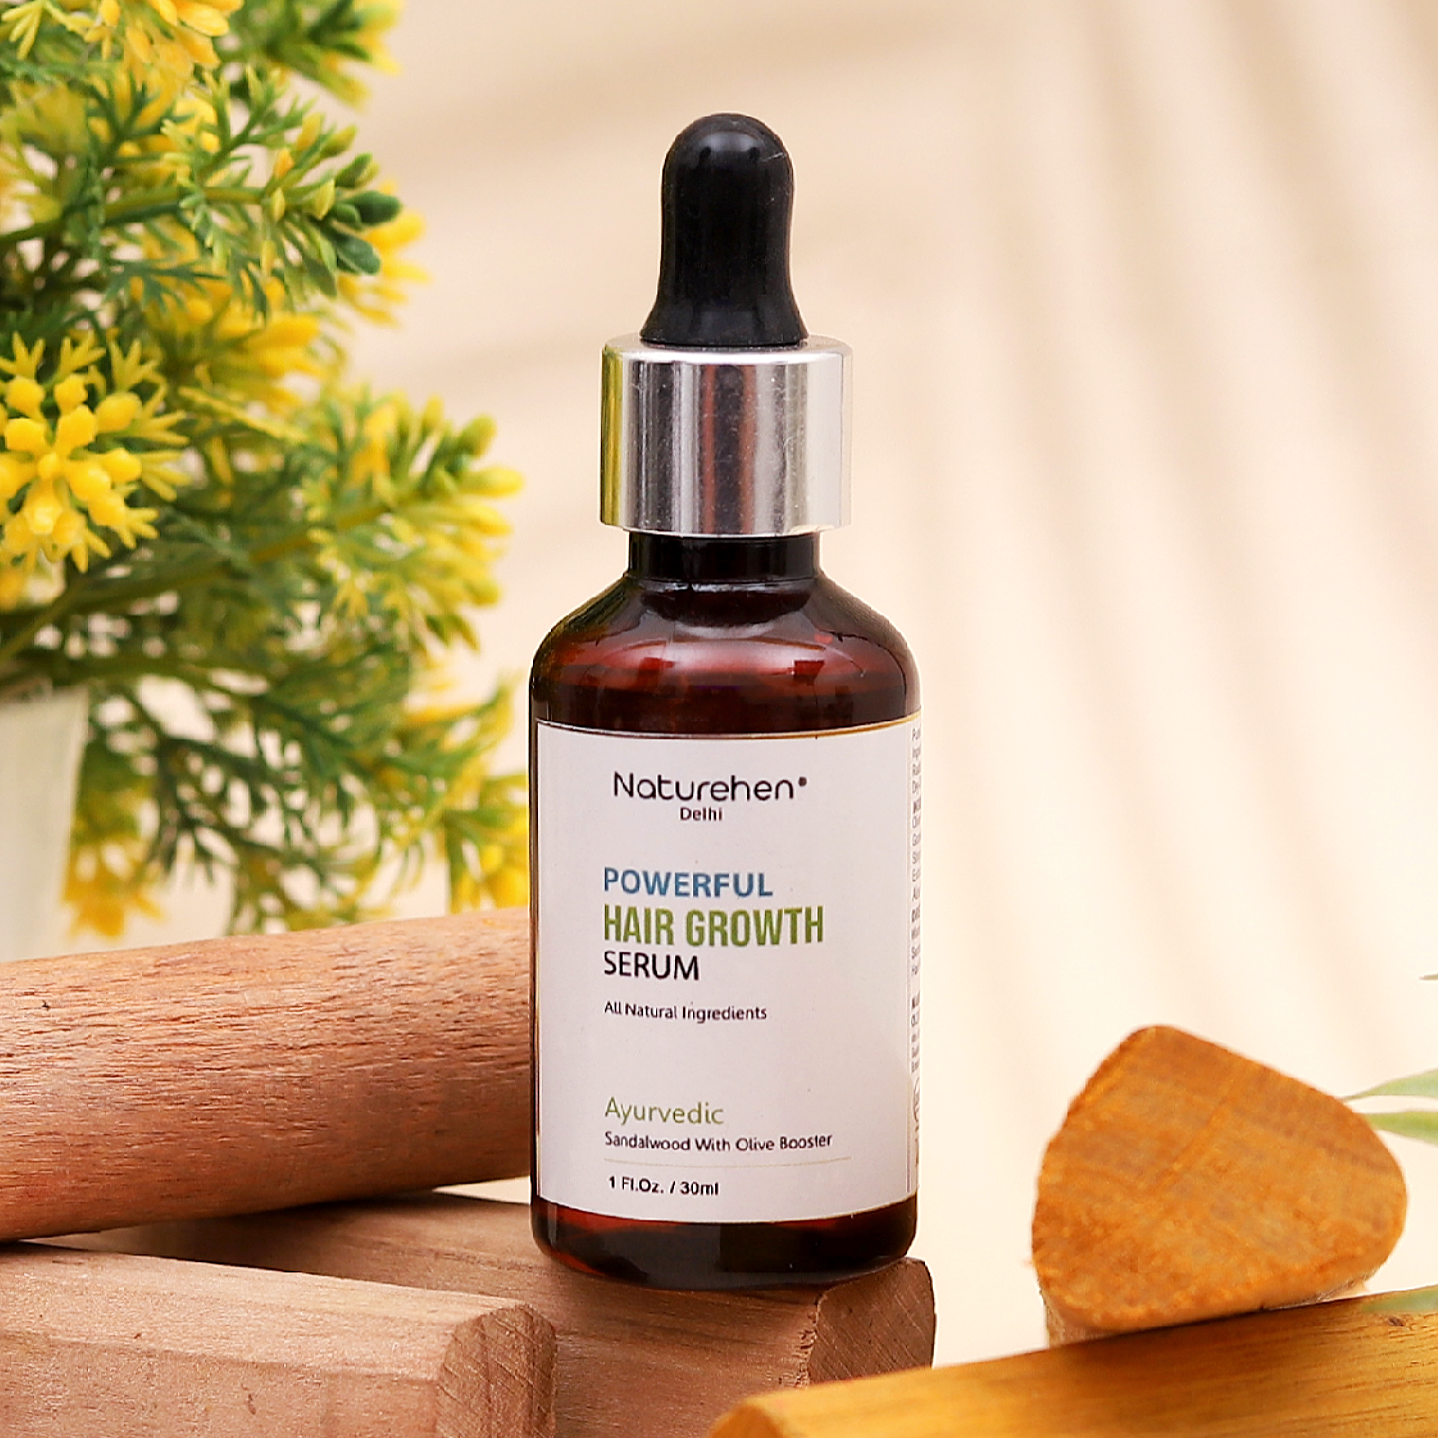 Naturehen Skin care Hair Oil 2x Vitamin E Nourishment with hair serum Increase hair volume Hair Oil (130 ml)